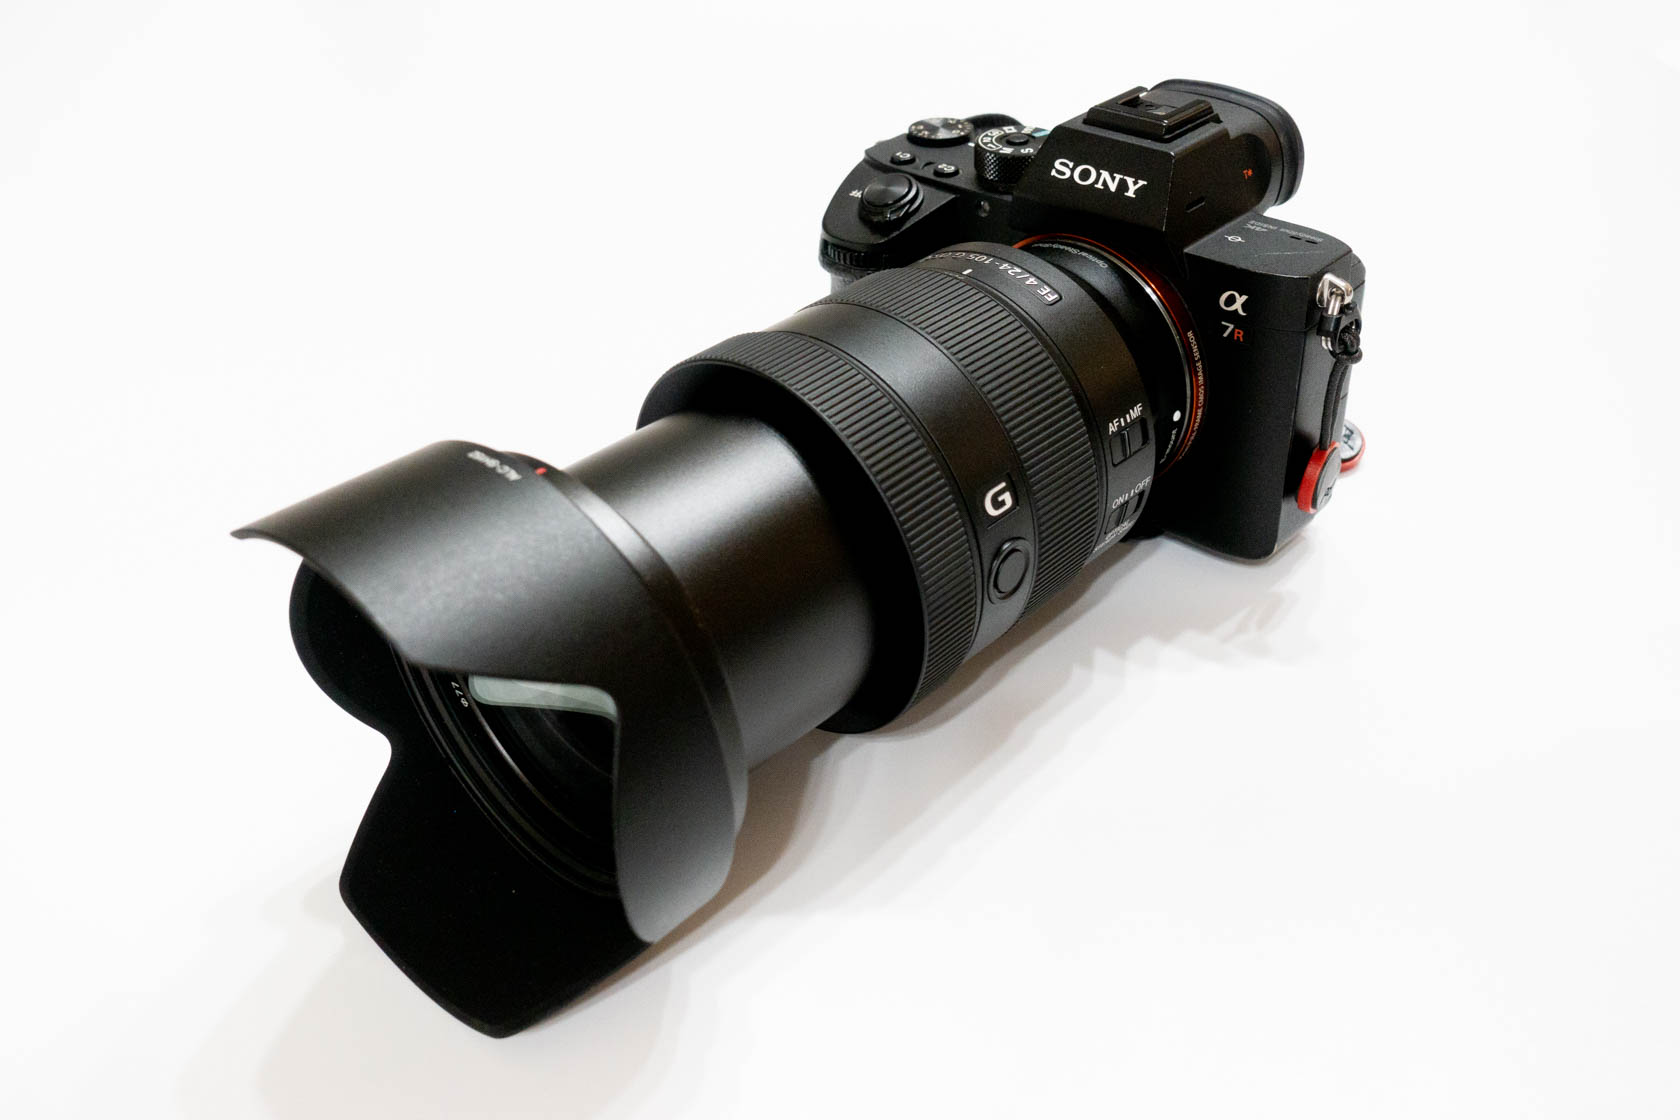 ソニーフルサイズ用レンズ『SEL24105G 24-105mm F4 G』レビュー。フル 